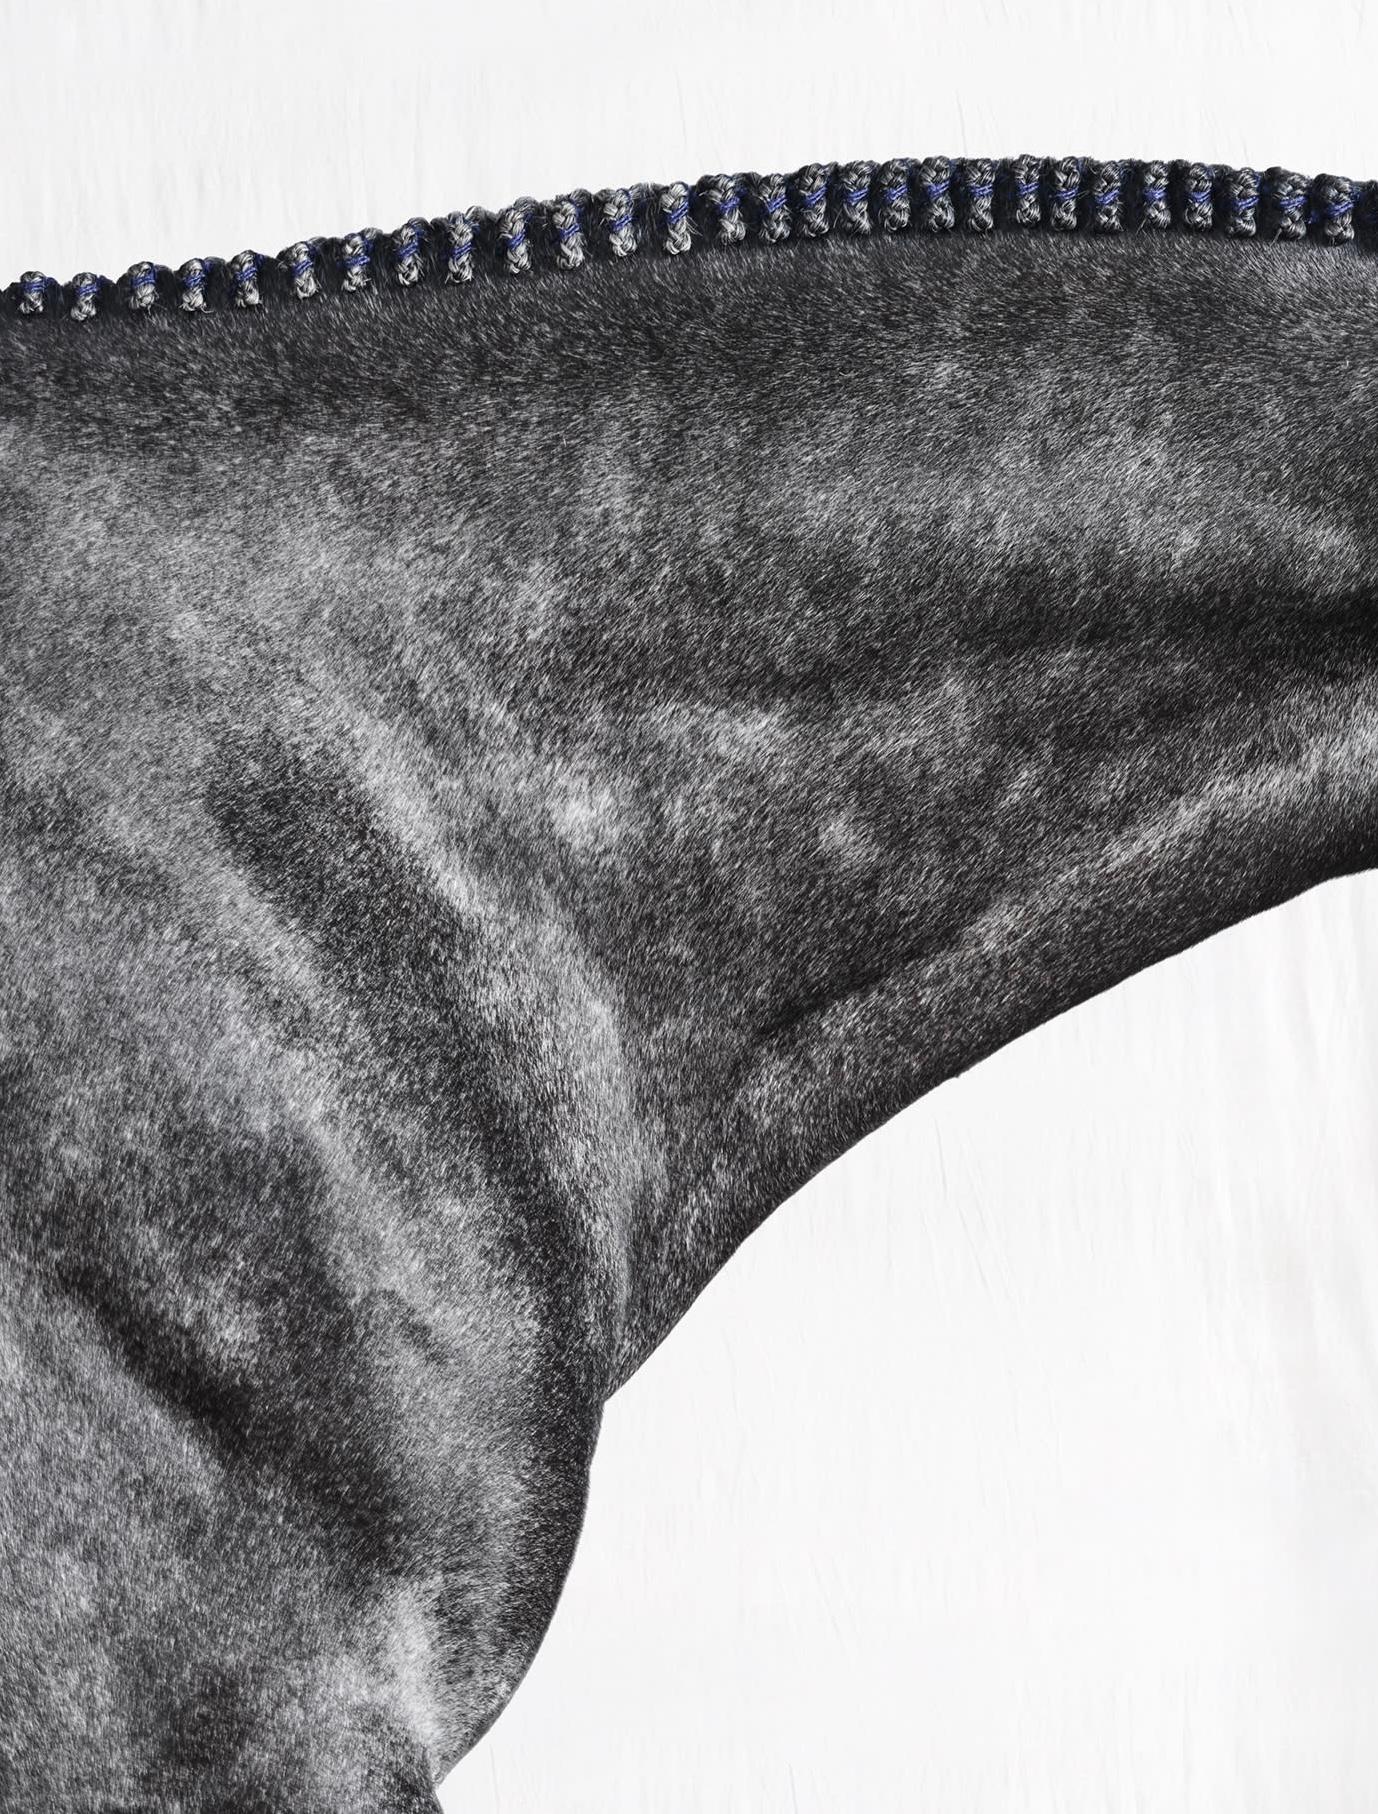 Optimist I - Portrait de cheval en noir et blanc en édition limitée, 2015 - Photograph de Juan Lamarca